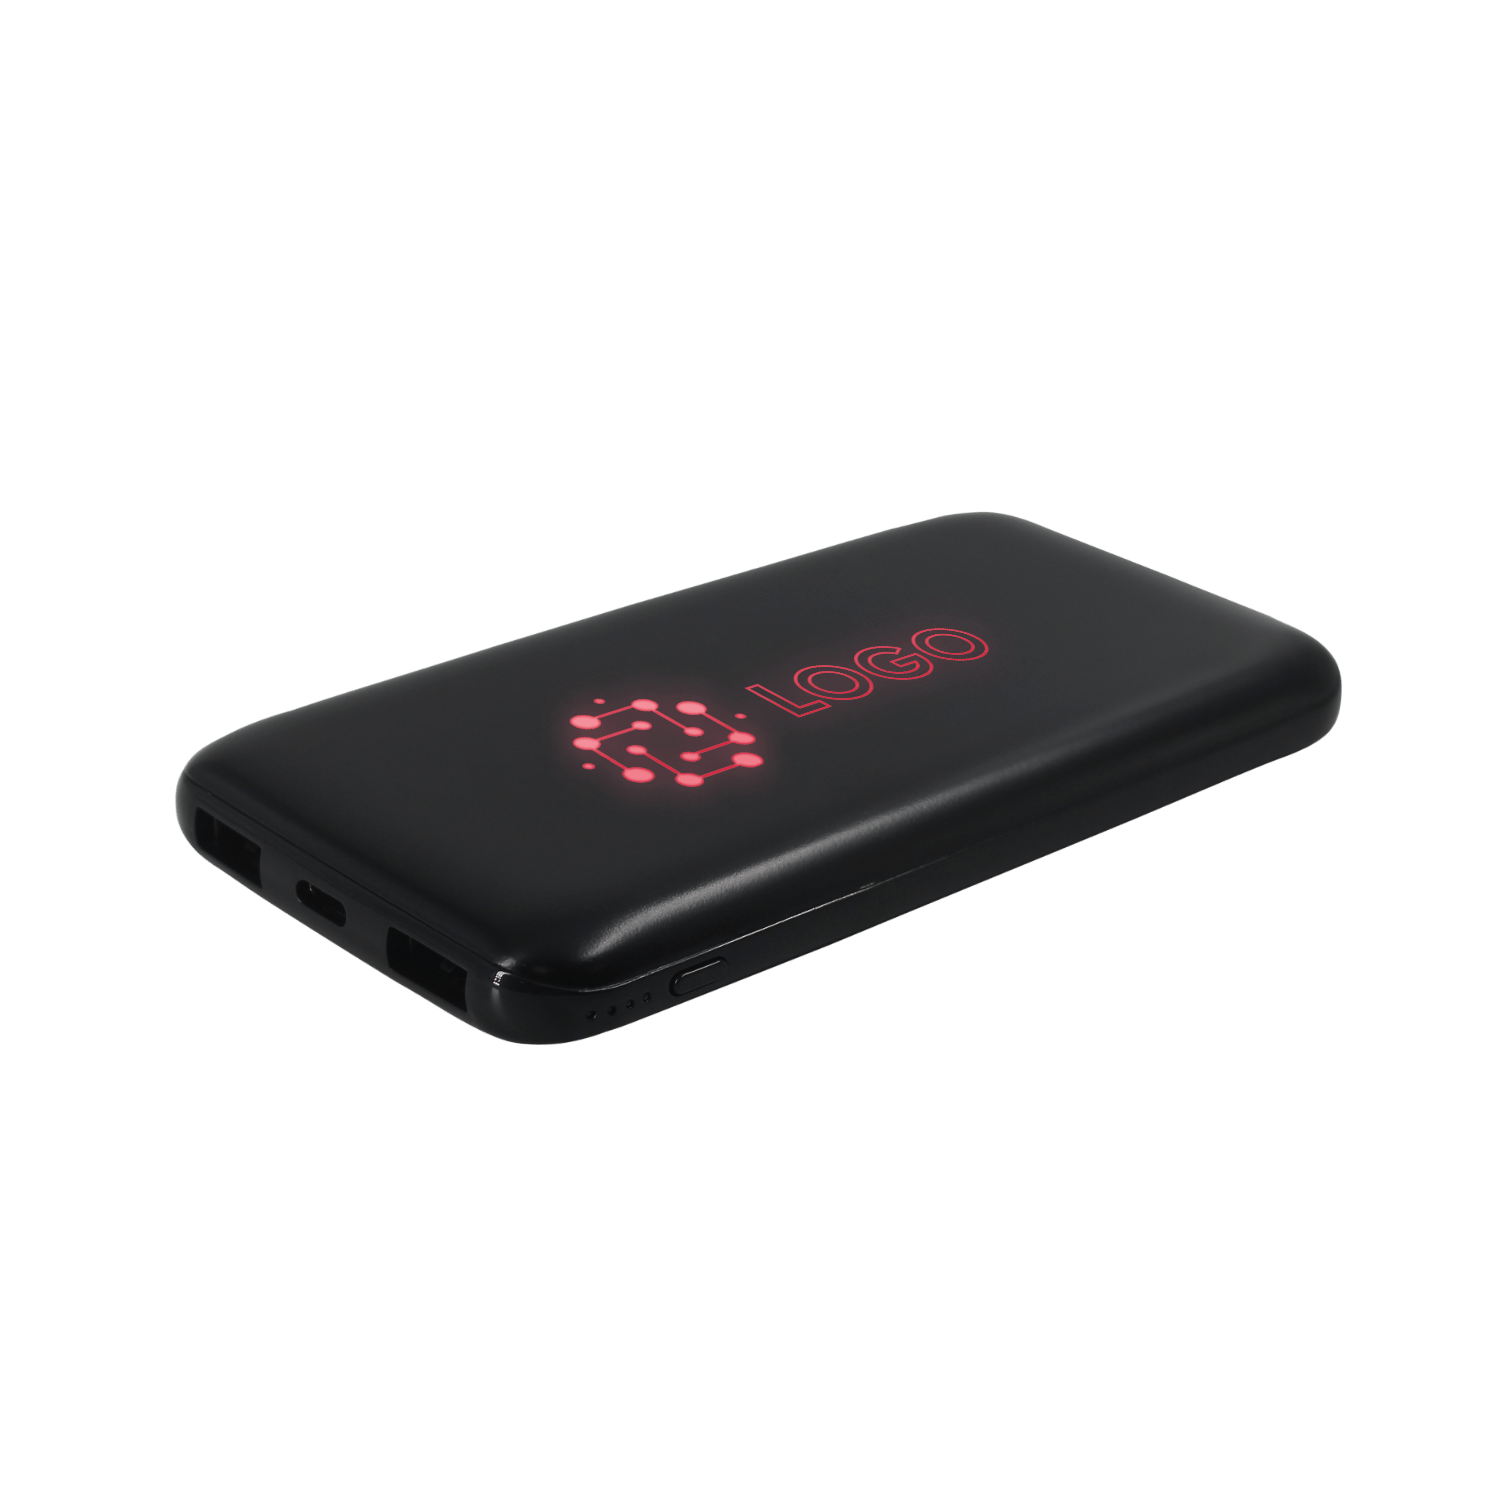 Внешний аккумулятор с подсветкой Bplanner Power 4 ST, 8000 mAh (Красный), черный, пластик